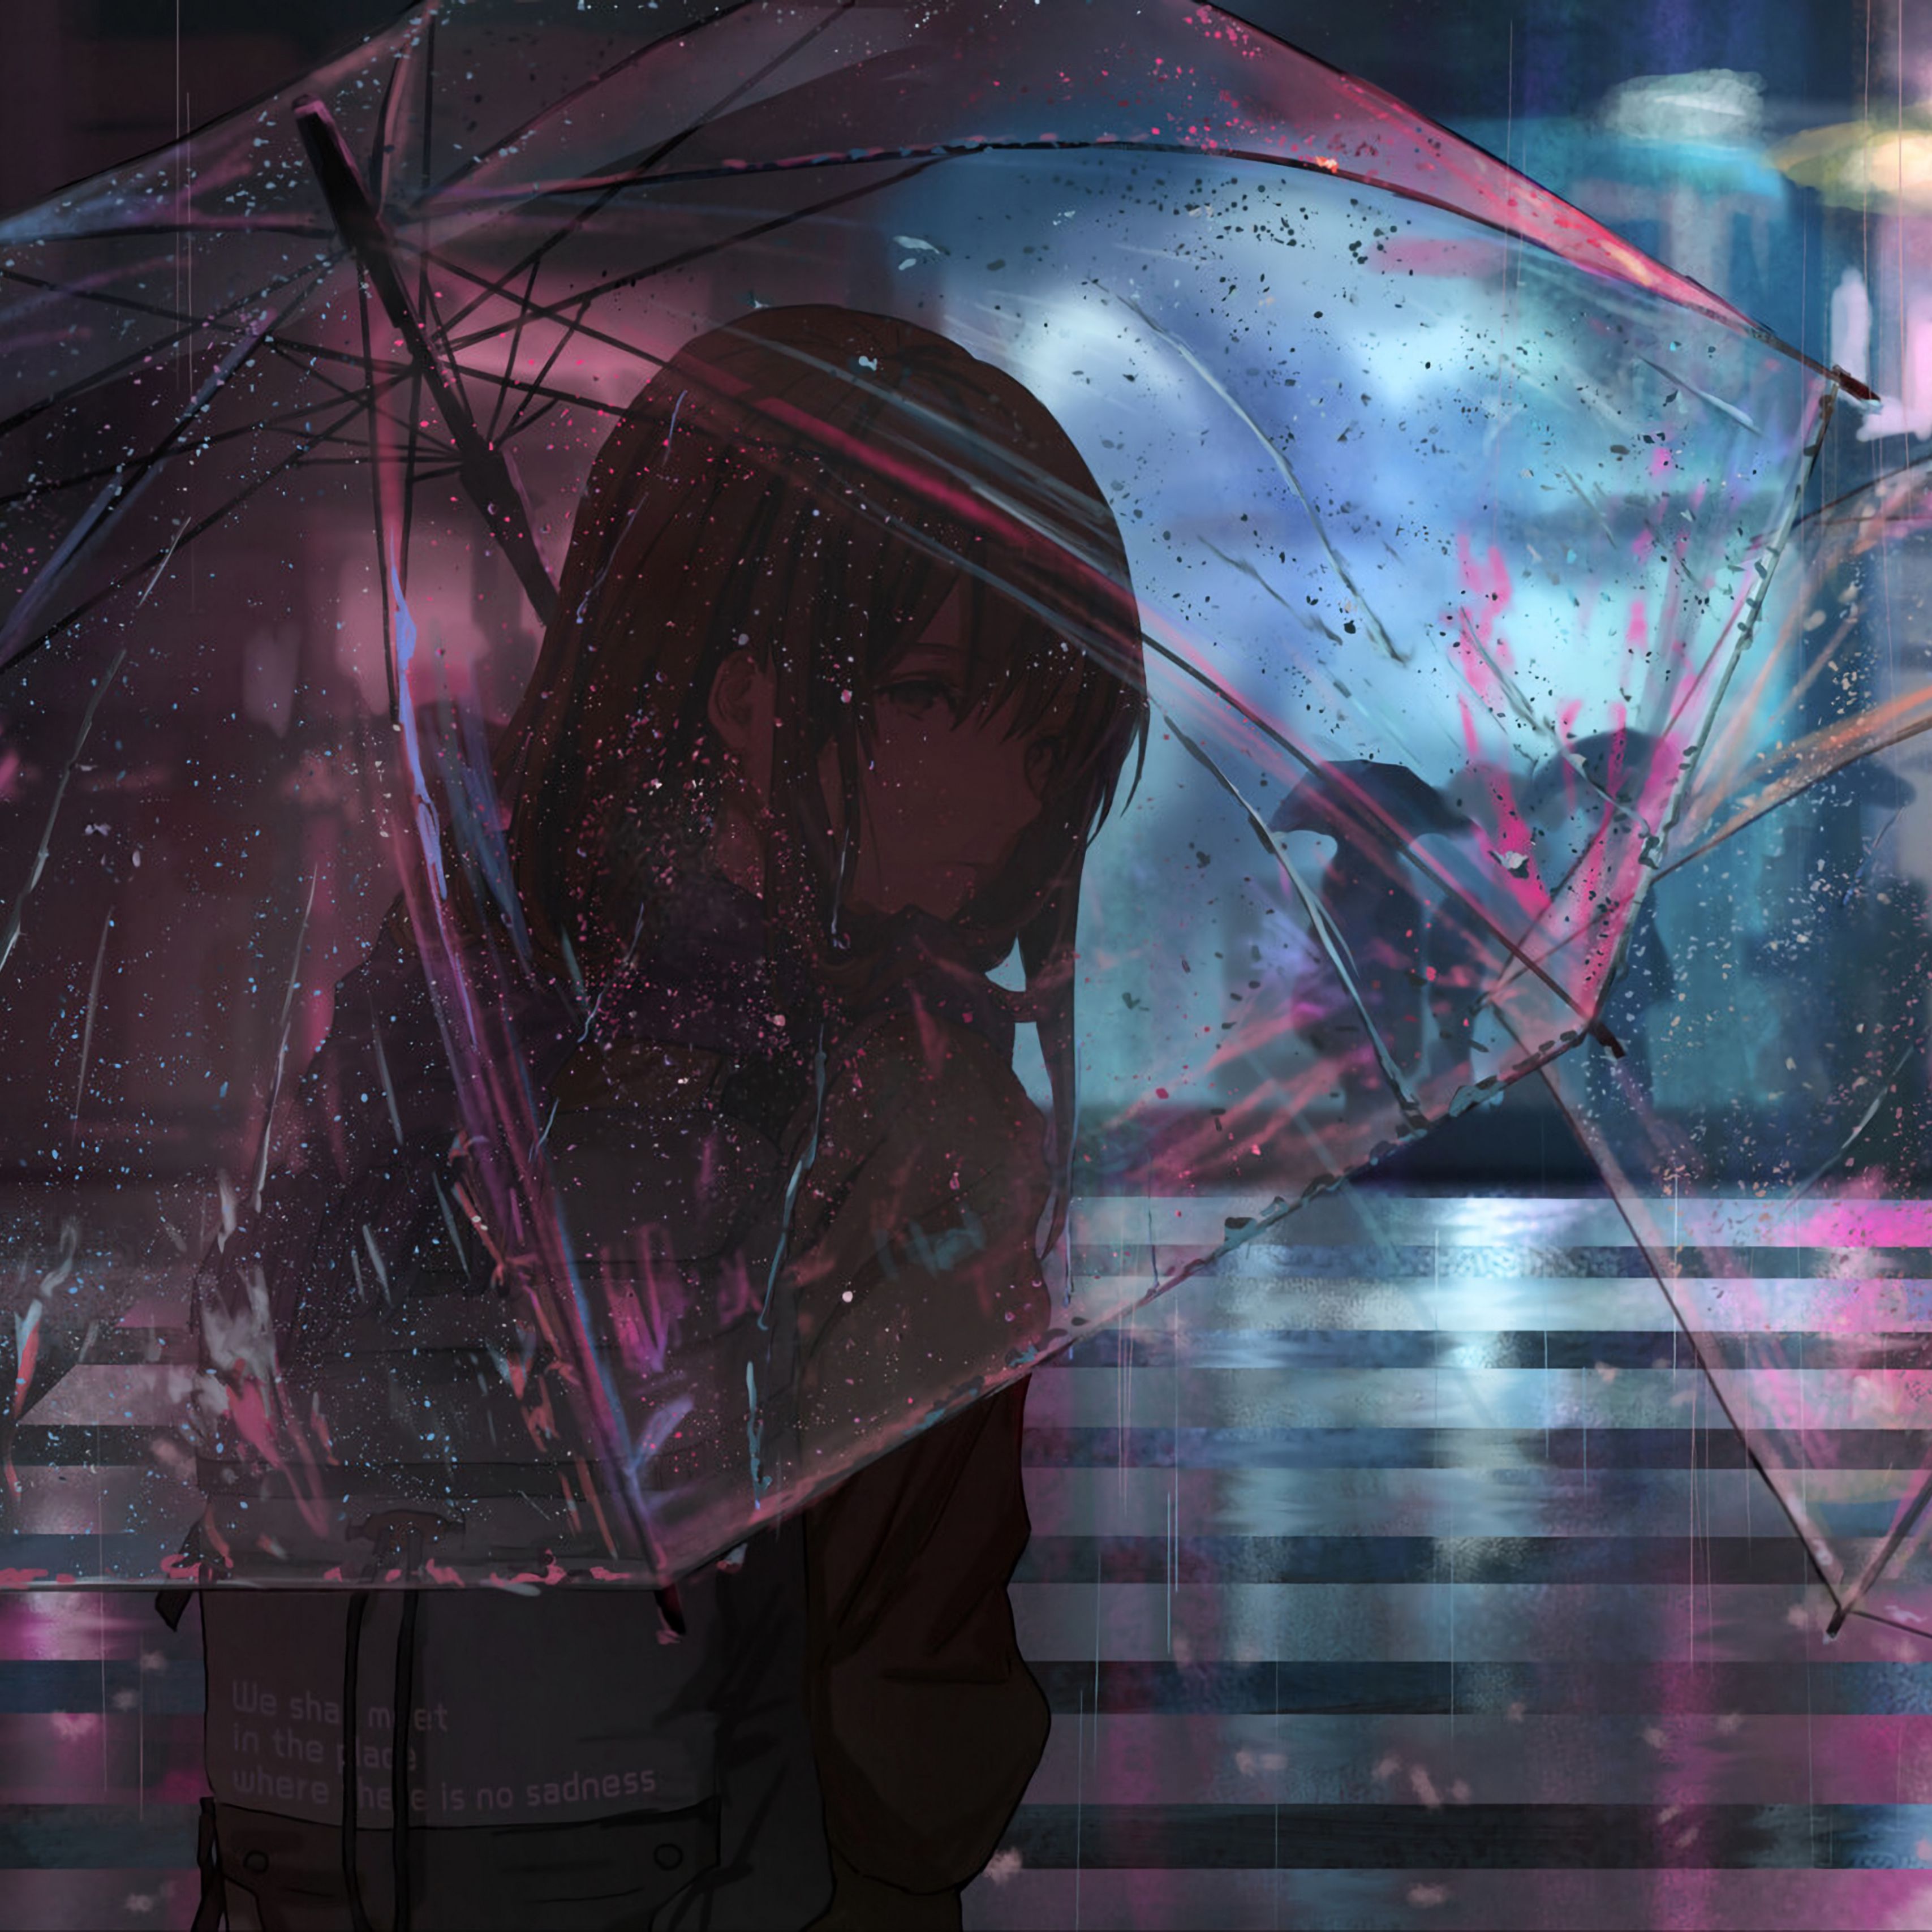 Mưa, đường phố và một cặp đôi anime đang đứng dưới ô dù. Hãy tưởng tượng về cảm giác thú vị của họ trong thời tiết lạnh giá này và cảm nhận được không khí lãng mạn bằng hình nền thiết kế tinh tế này. Tải về ngay và khám phá những hình ảnh đẹp mắt nhất của anime.